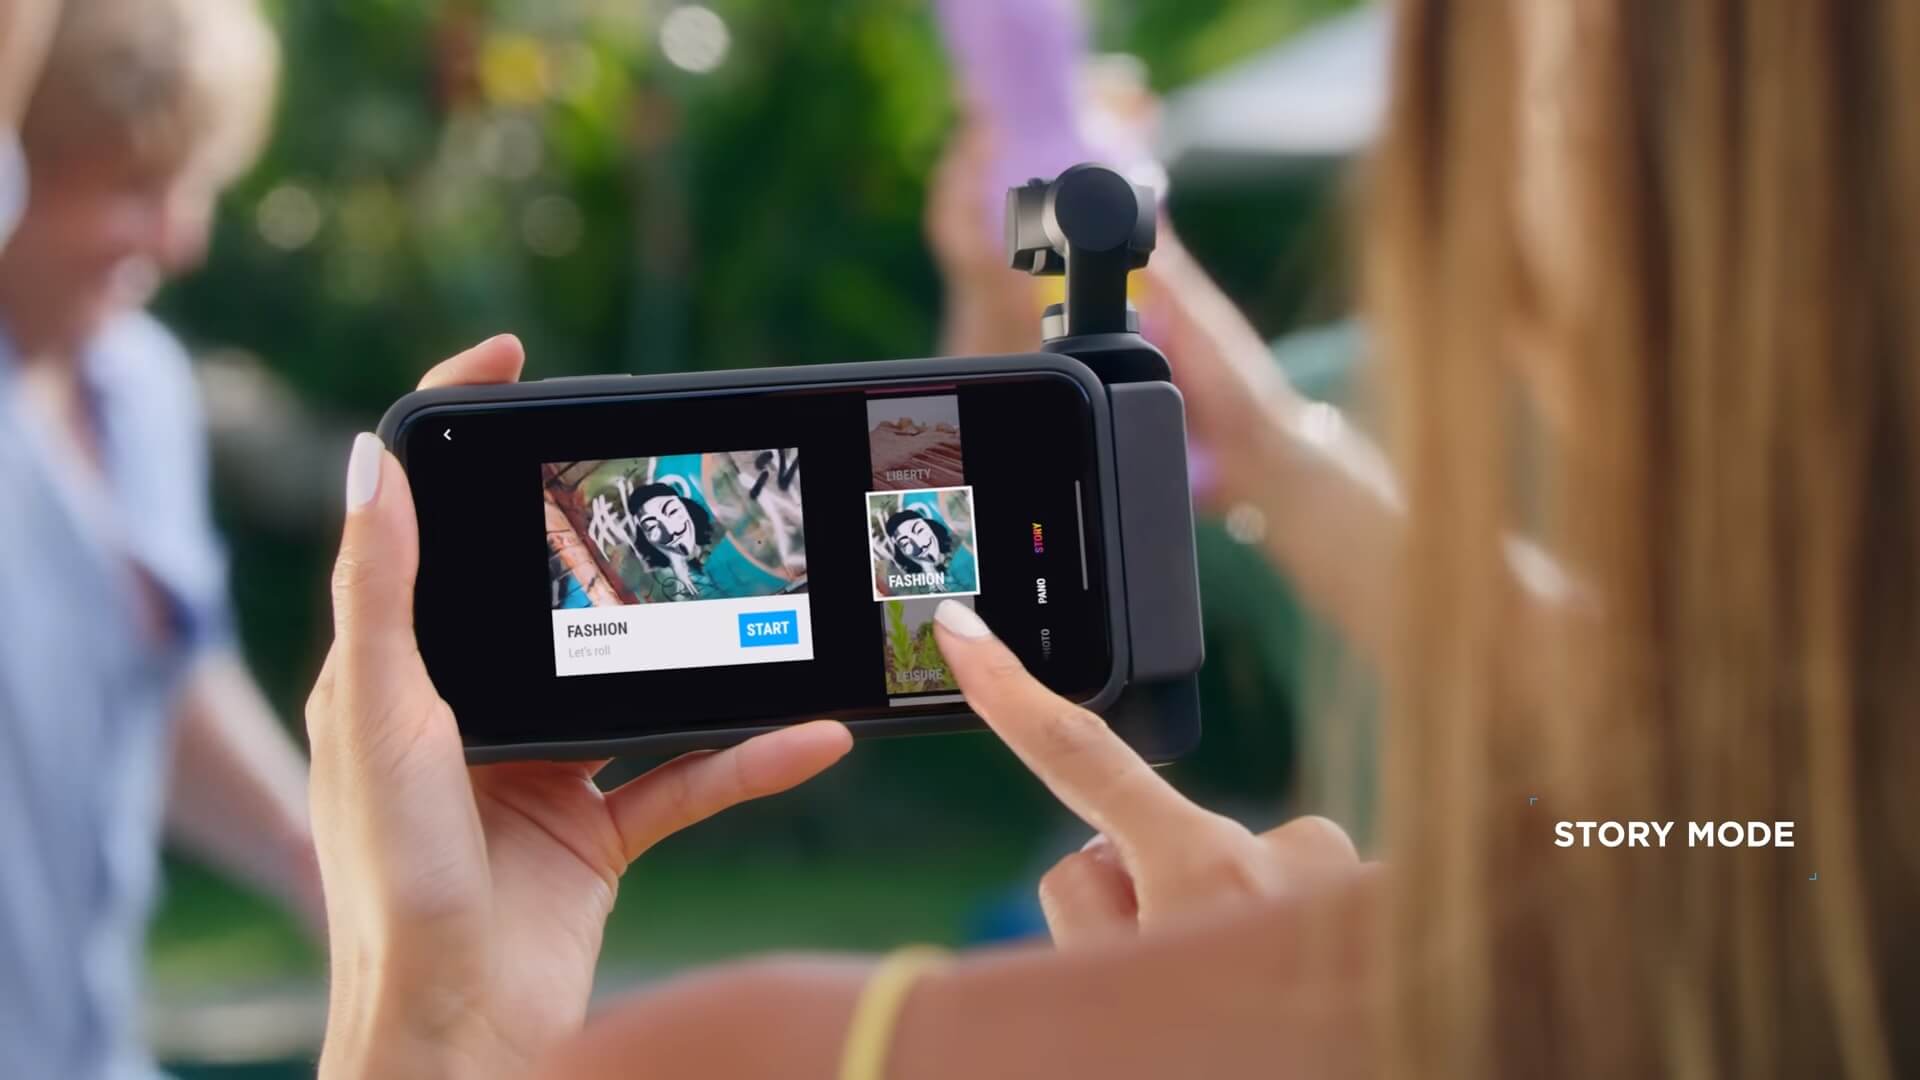 DJI Pocket 2 - StoryMode tạo nhanh video theo những cài đặt có sẵn